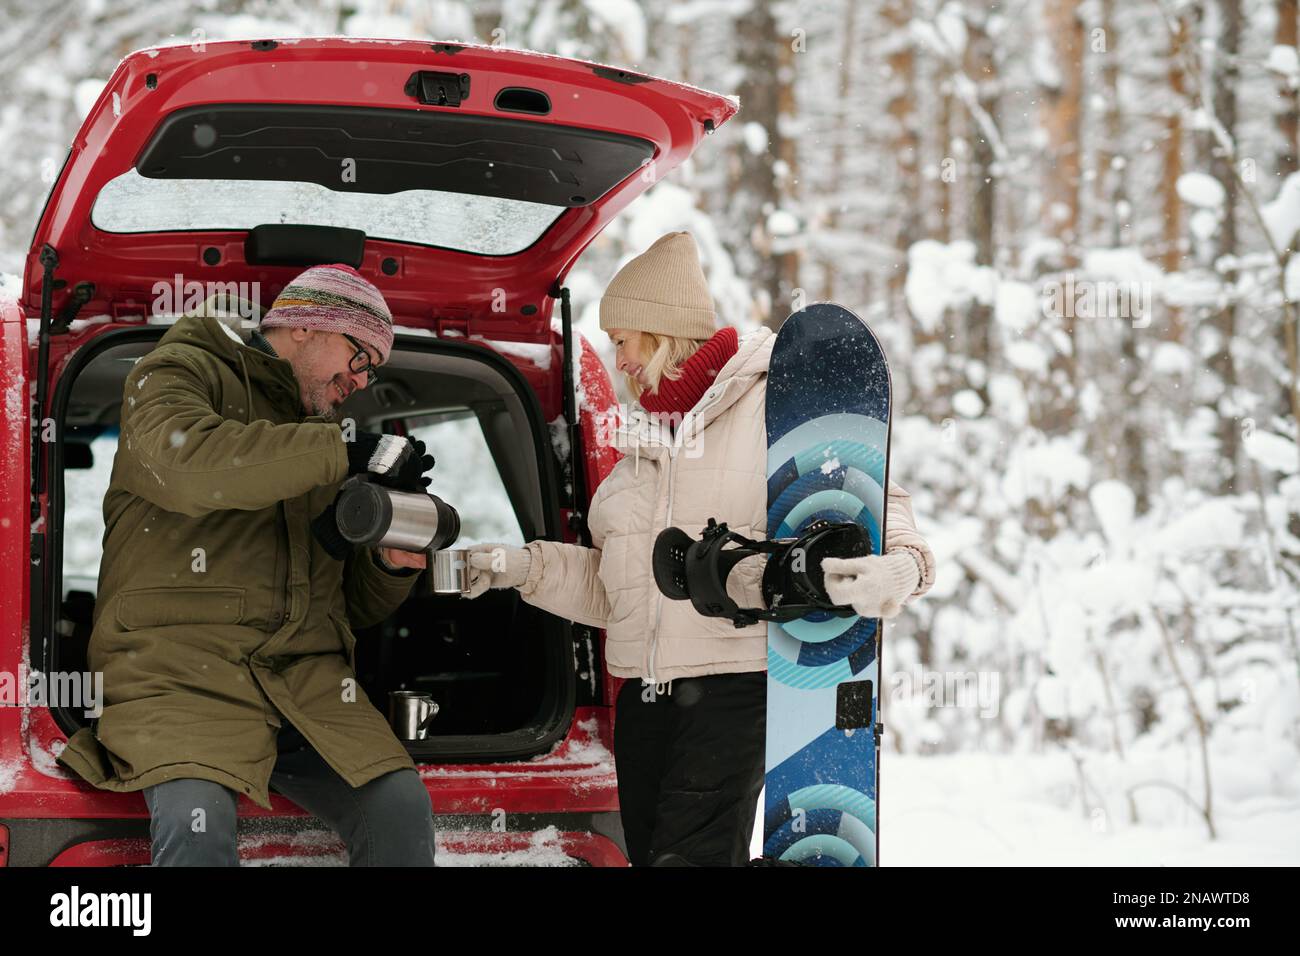 Aktiver, reifer Ehemann und Ehefrau in Winterbekleidung mit heißem Tee im Kofferraum im Wald, während eine glückliche Seniorin Skateboard hält Stockfoto